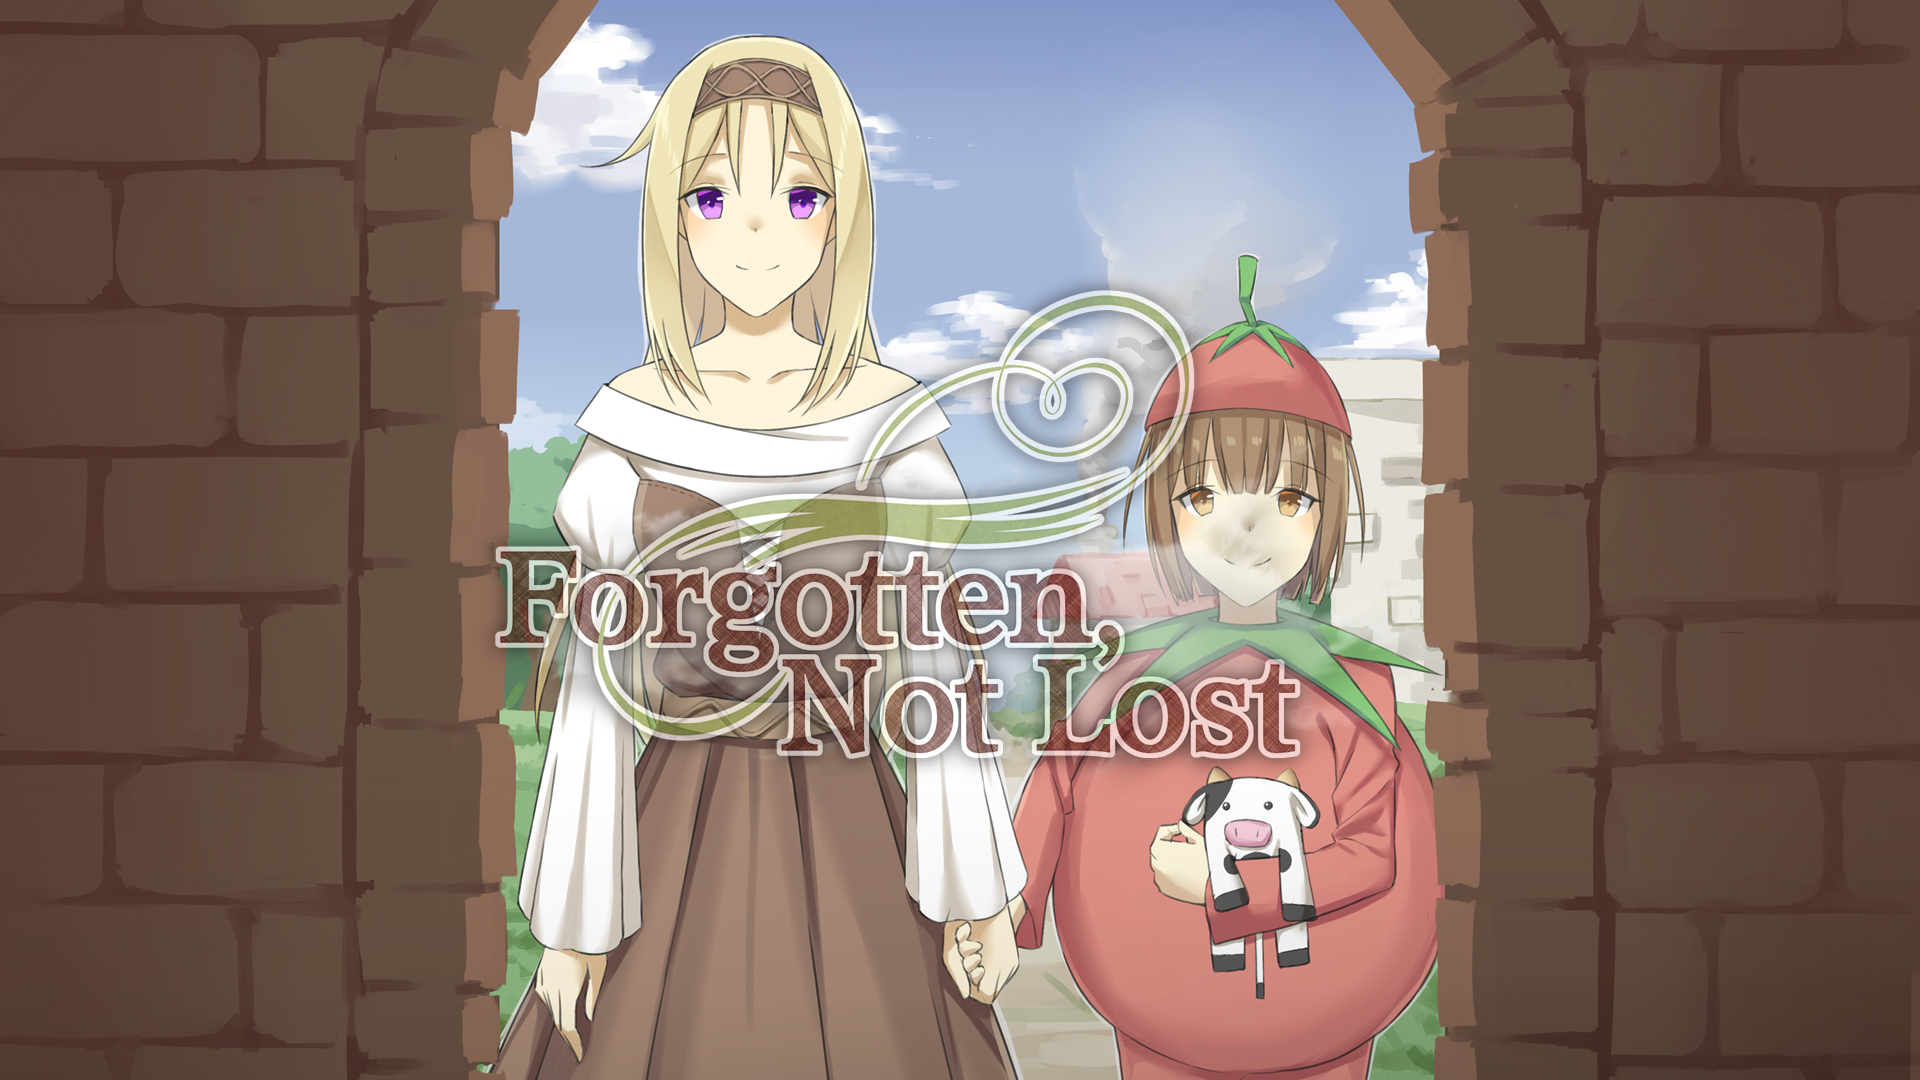 Забытые новелла. Forgotten, not Lost - a Kinetic novel. Forgotten новелла. Lost and Forgotten игра. Лост нот Форготтен.